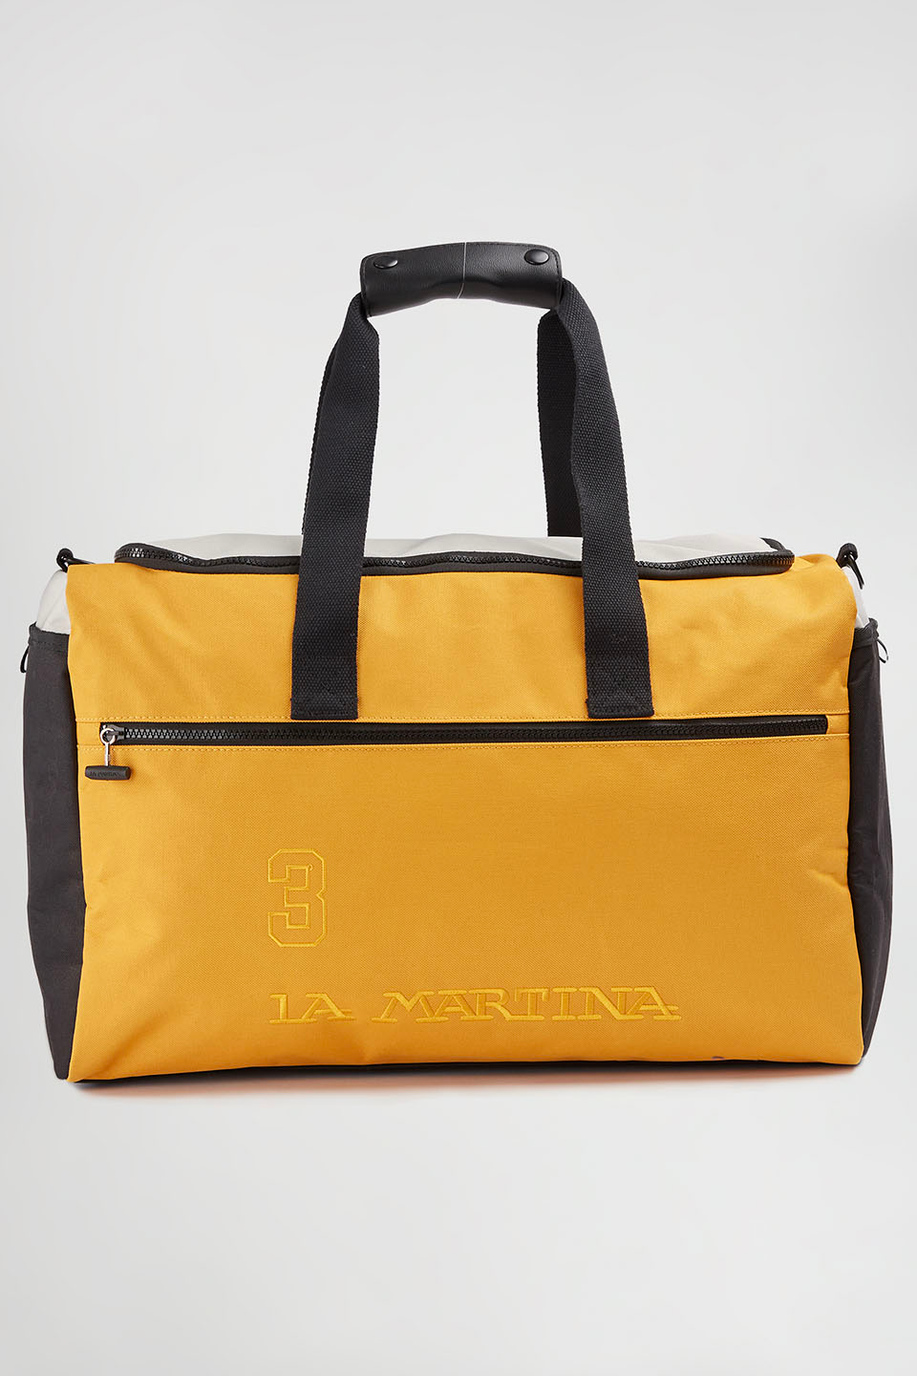 Reisetasche aus Polyester - Taschen | La Martina - Official Online Shop